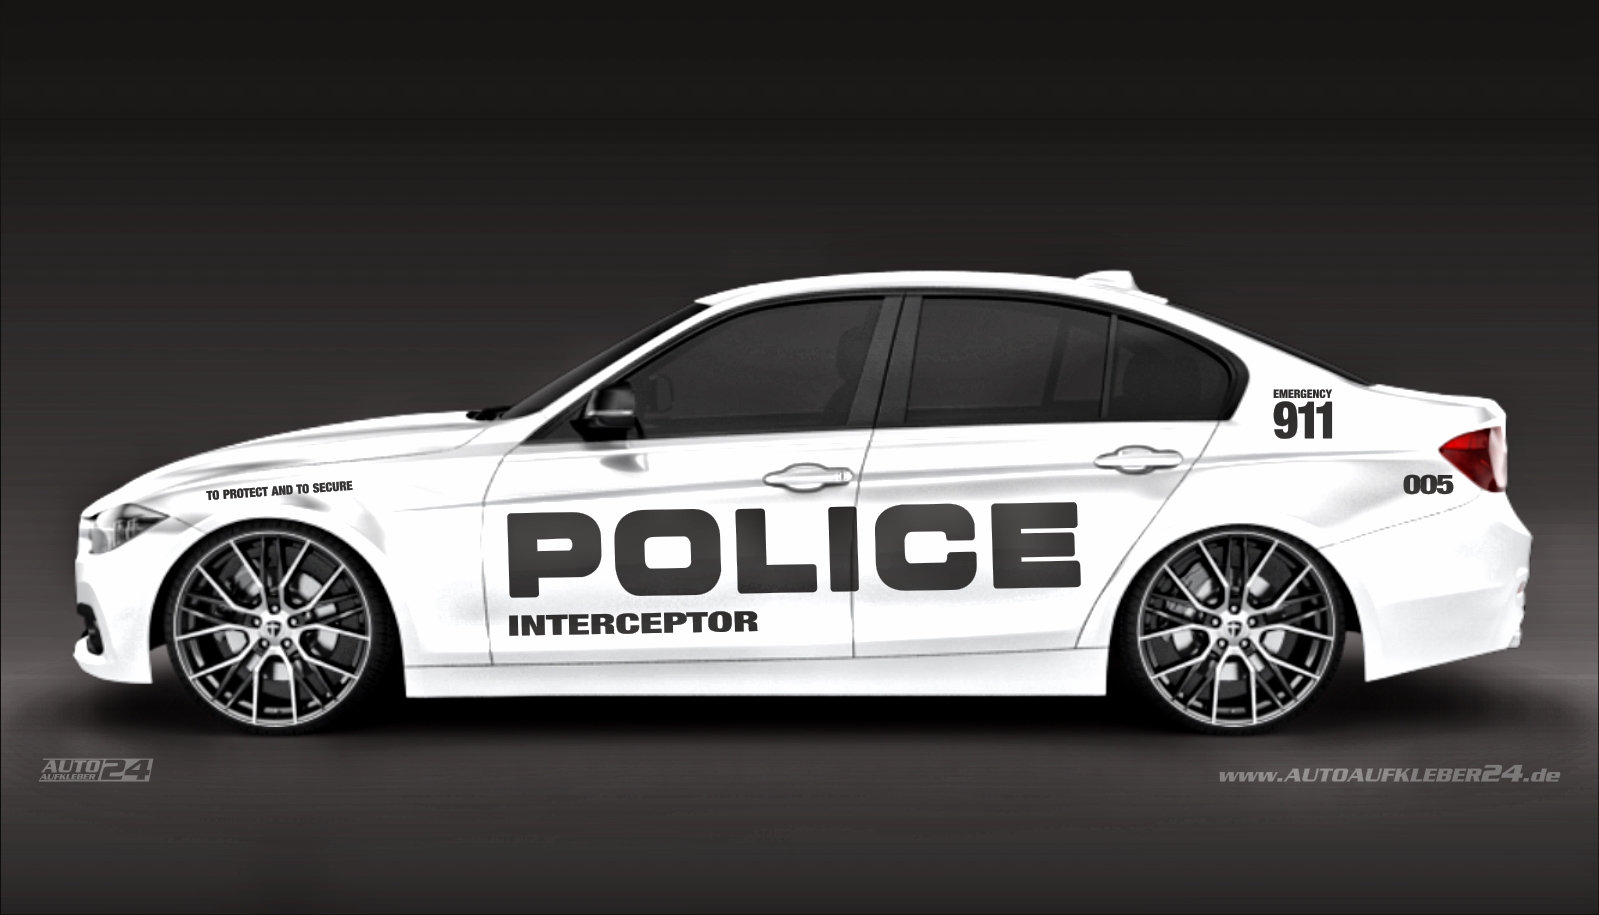 Police car design- Autoaufkleber Set — Autoaufkleber 24